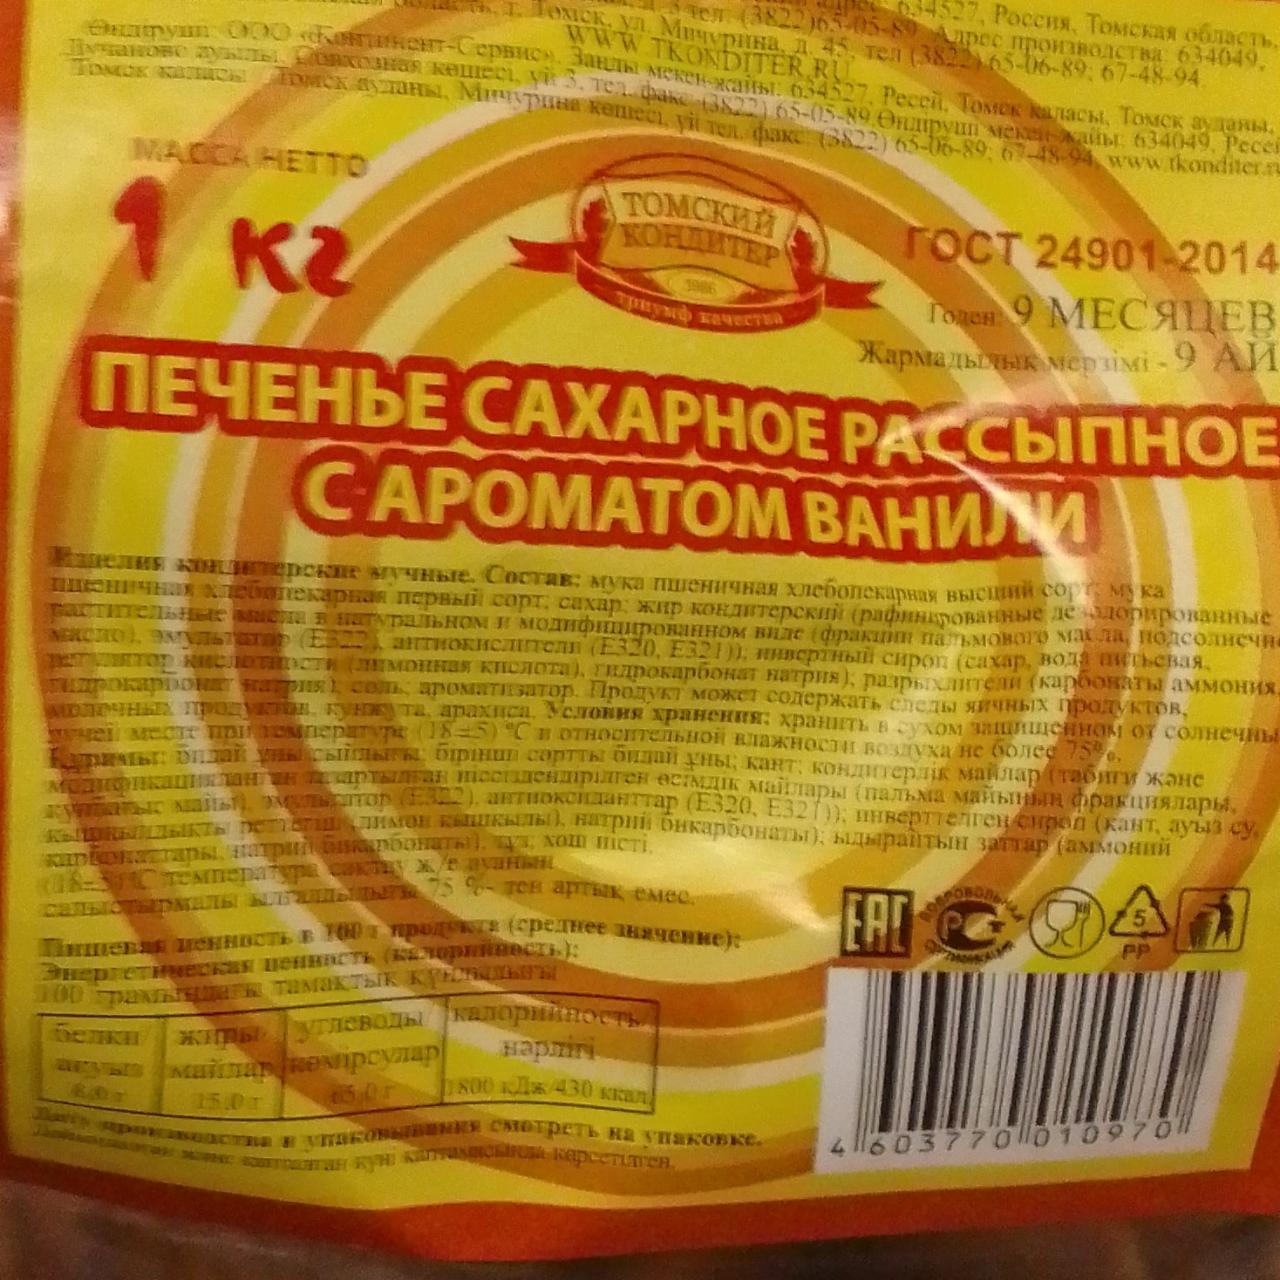 Фото - Печенье сахарное Рассыпное с ароматом ванили Томский кондитер